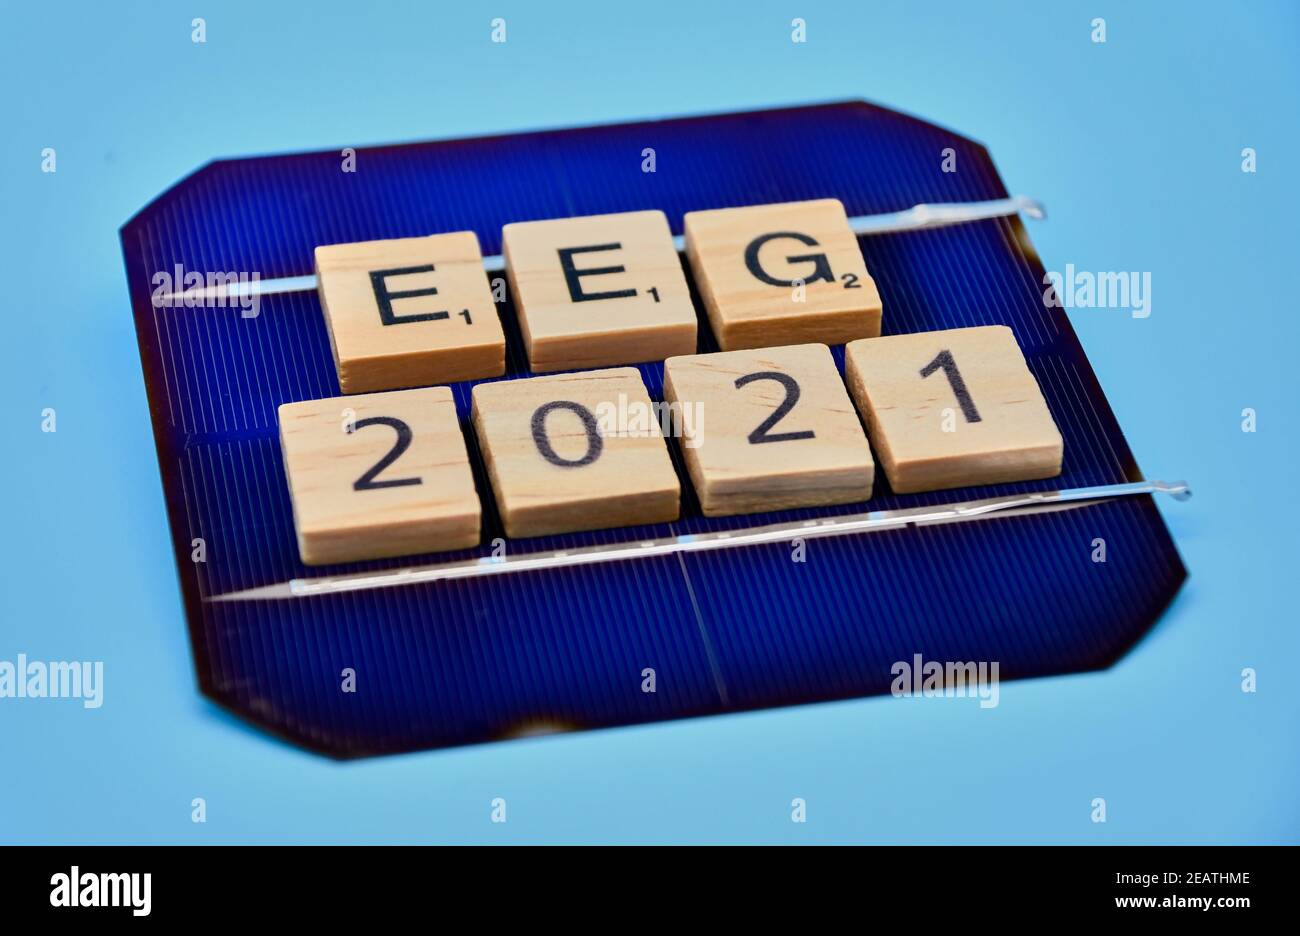 EEG 2021 - Symbolschriftzug zum Erneuerbare-Energien-Gesetz Foto Stock